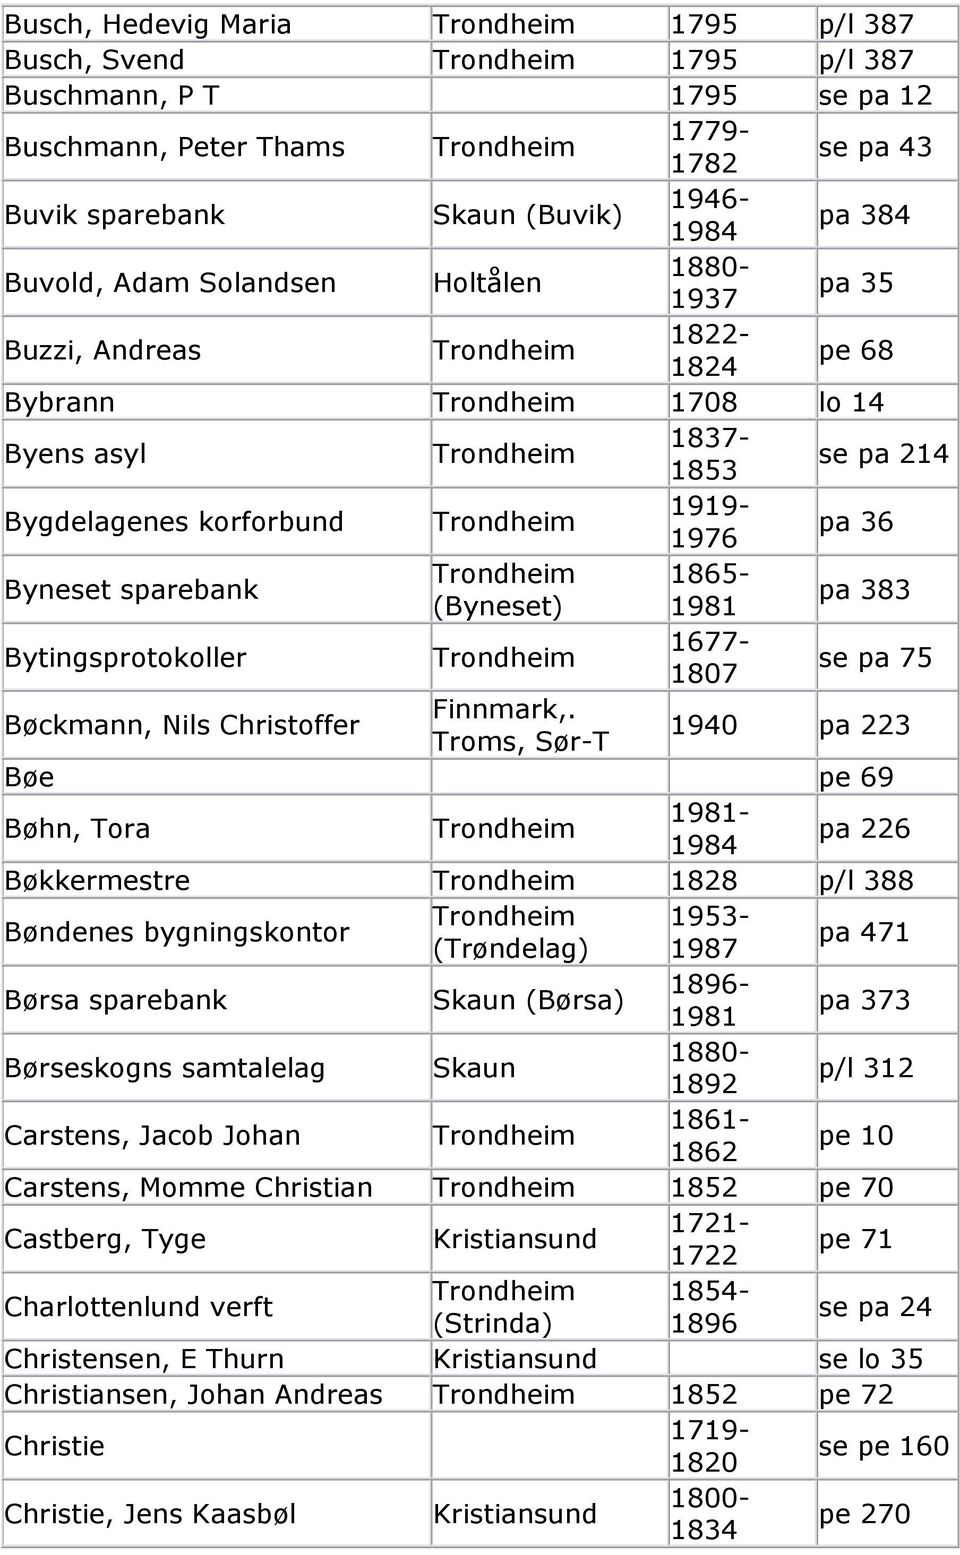 383 Bytingsprotokoller 1677-1807 se pa 75 Bøckmann, Nils Christoffer Finnmark,.